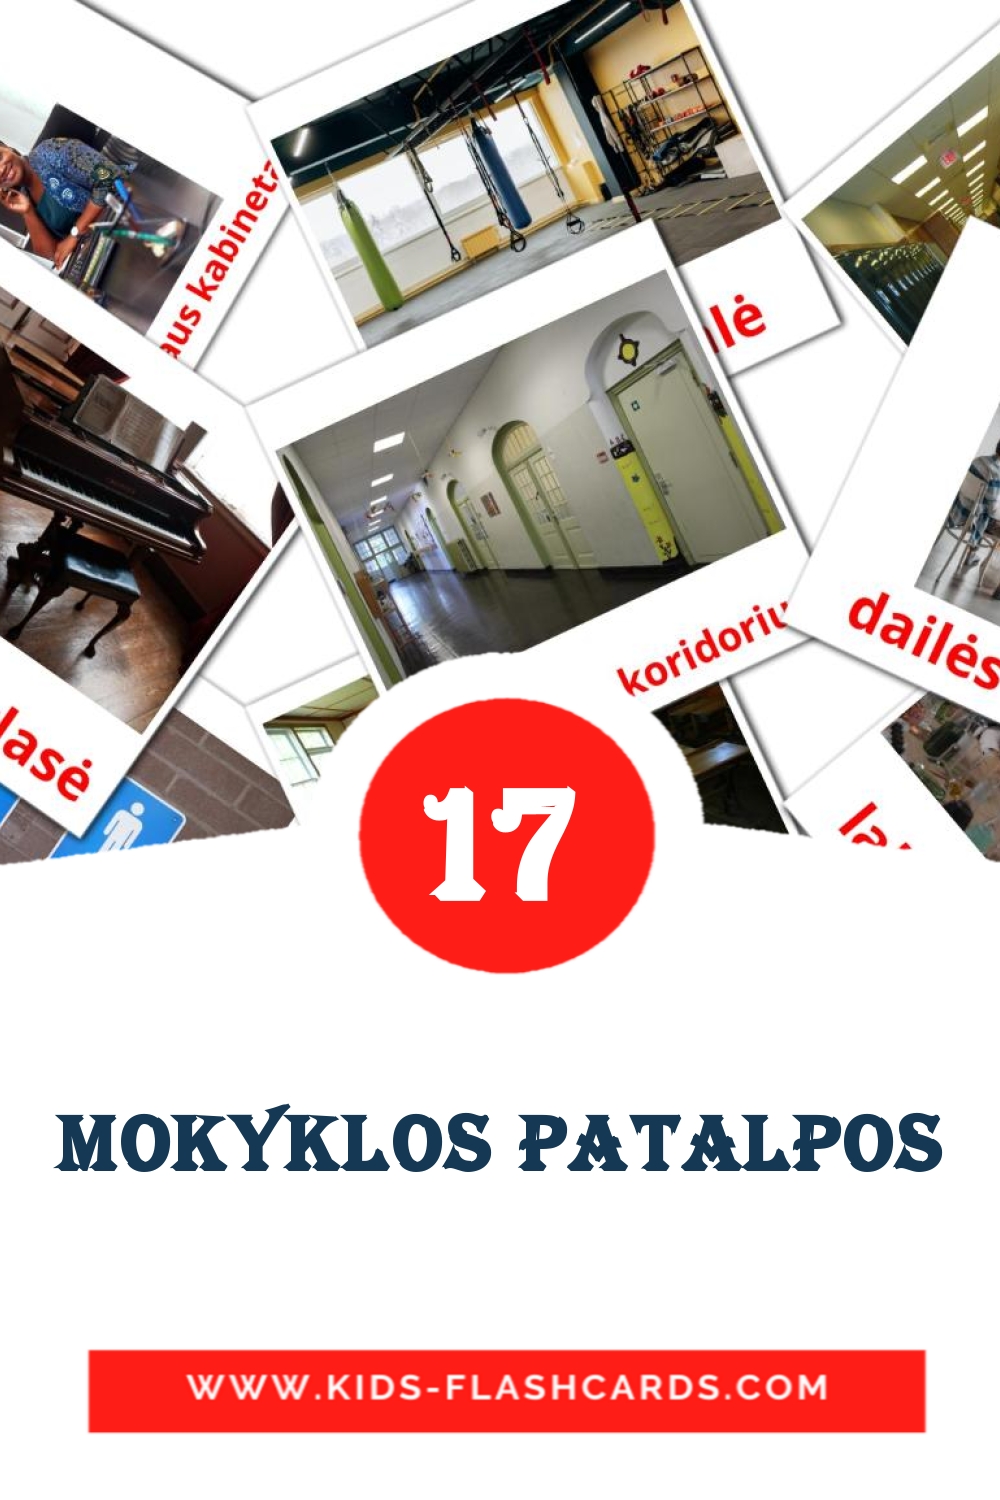 17 tarjetas didacticas de mokyklos patalpos para el jardín de infancia en lituano